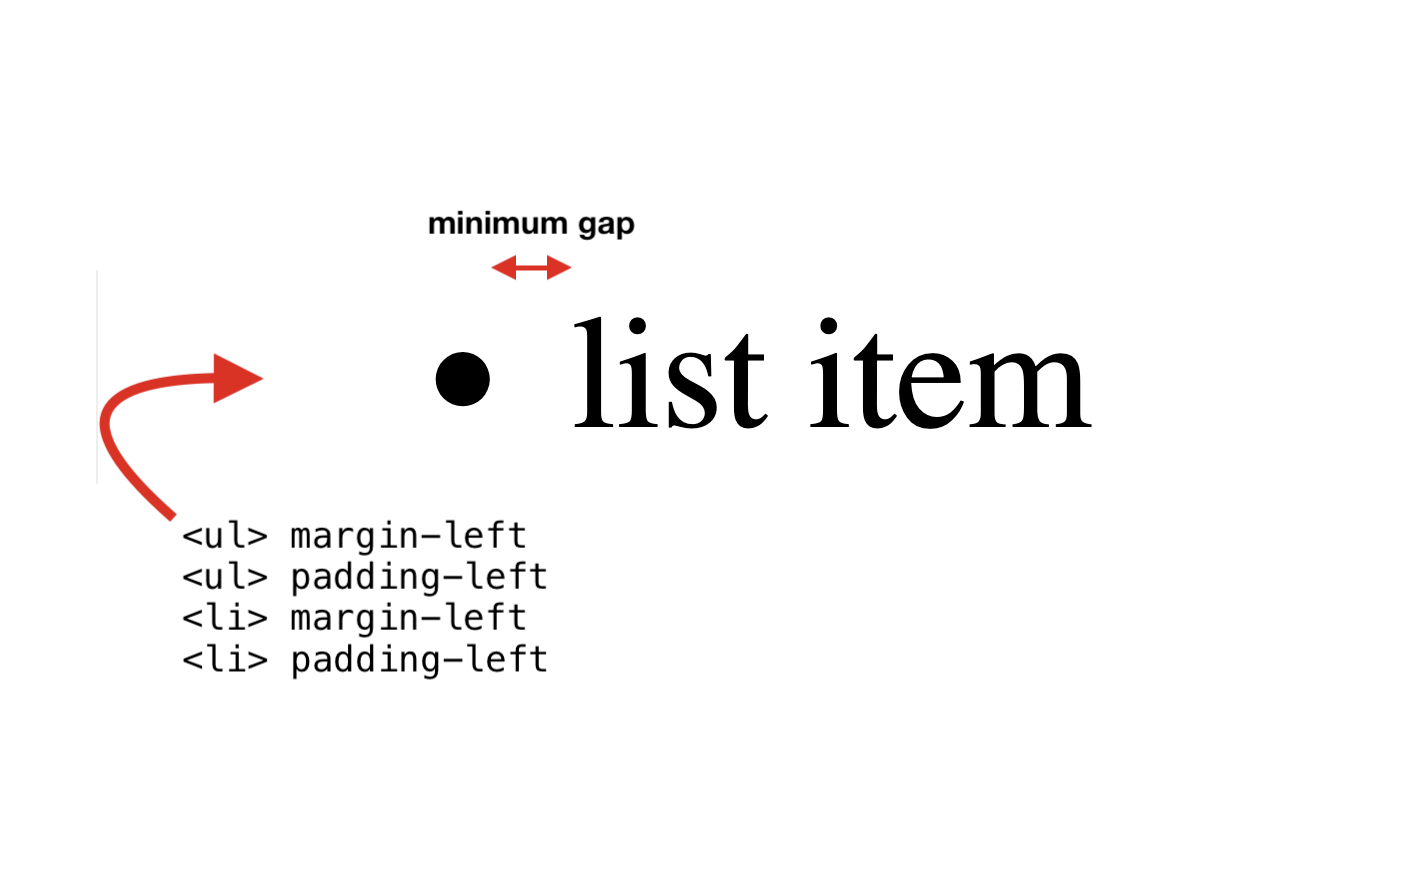 Las cuatro propiedades: UL margin-left, UL padding-left, LI margin-left, LI padding-left.